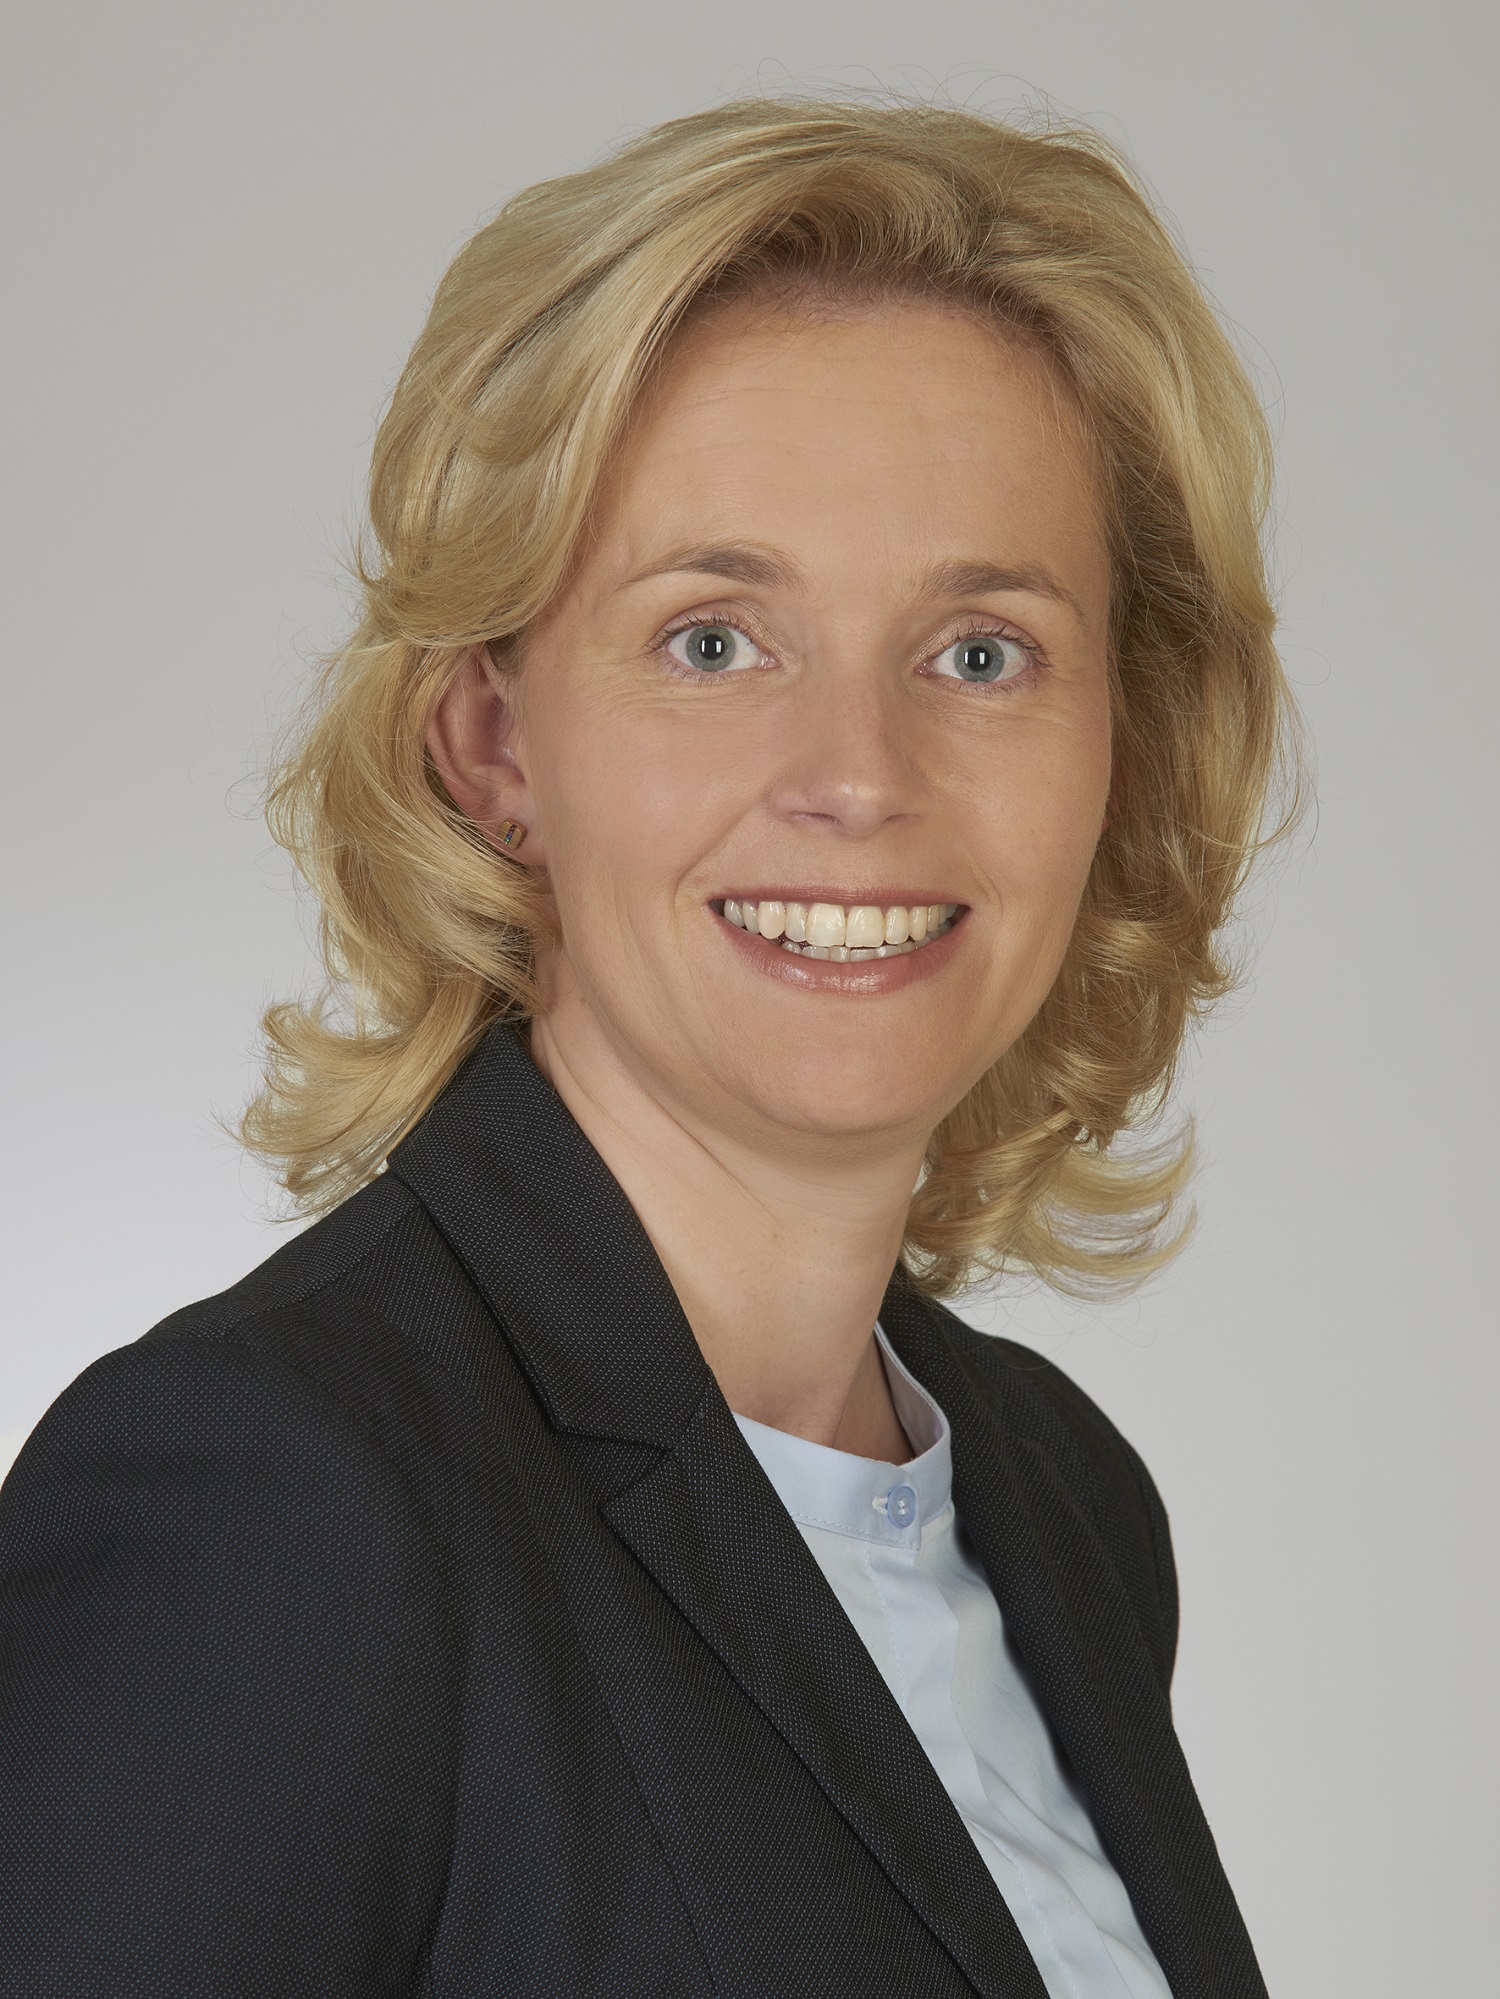 Rählmann, Christina (SPD)